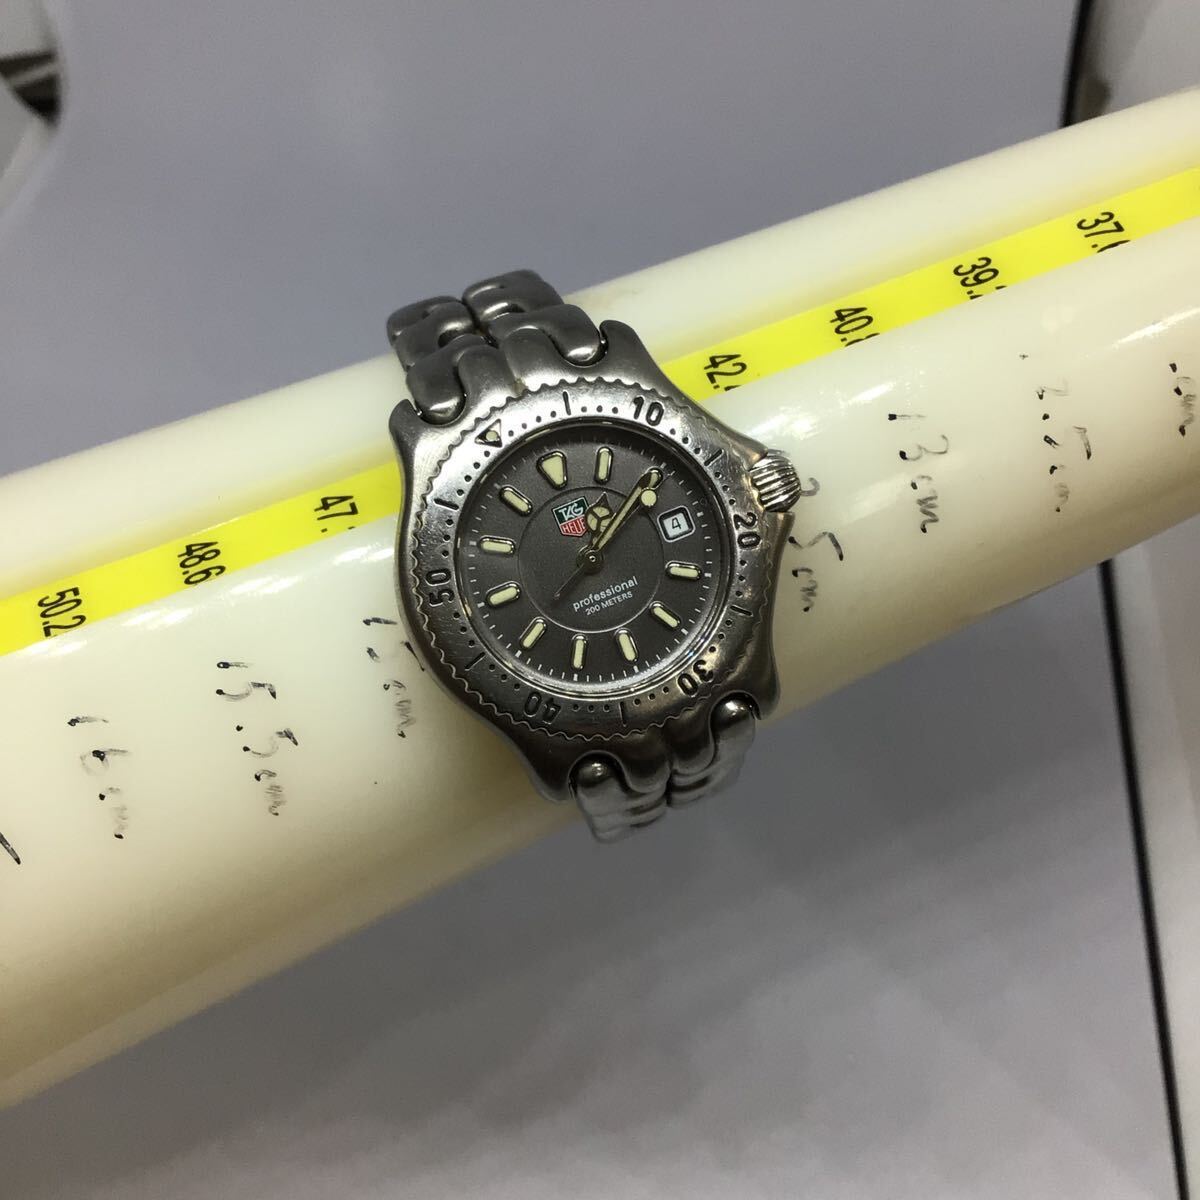 タグホイヤー セル 腕時計 デイト 文字盤黒 シルバー色 WG1313-0 TAG HEUER _画像2